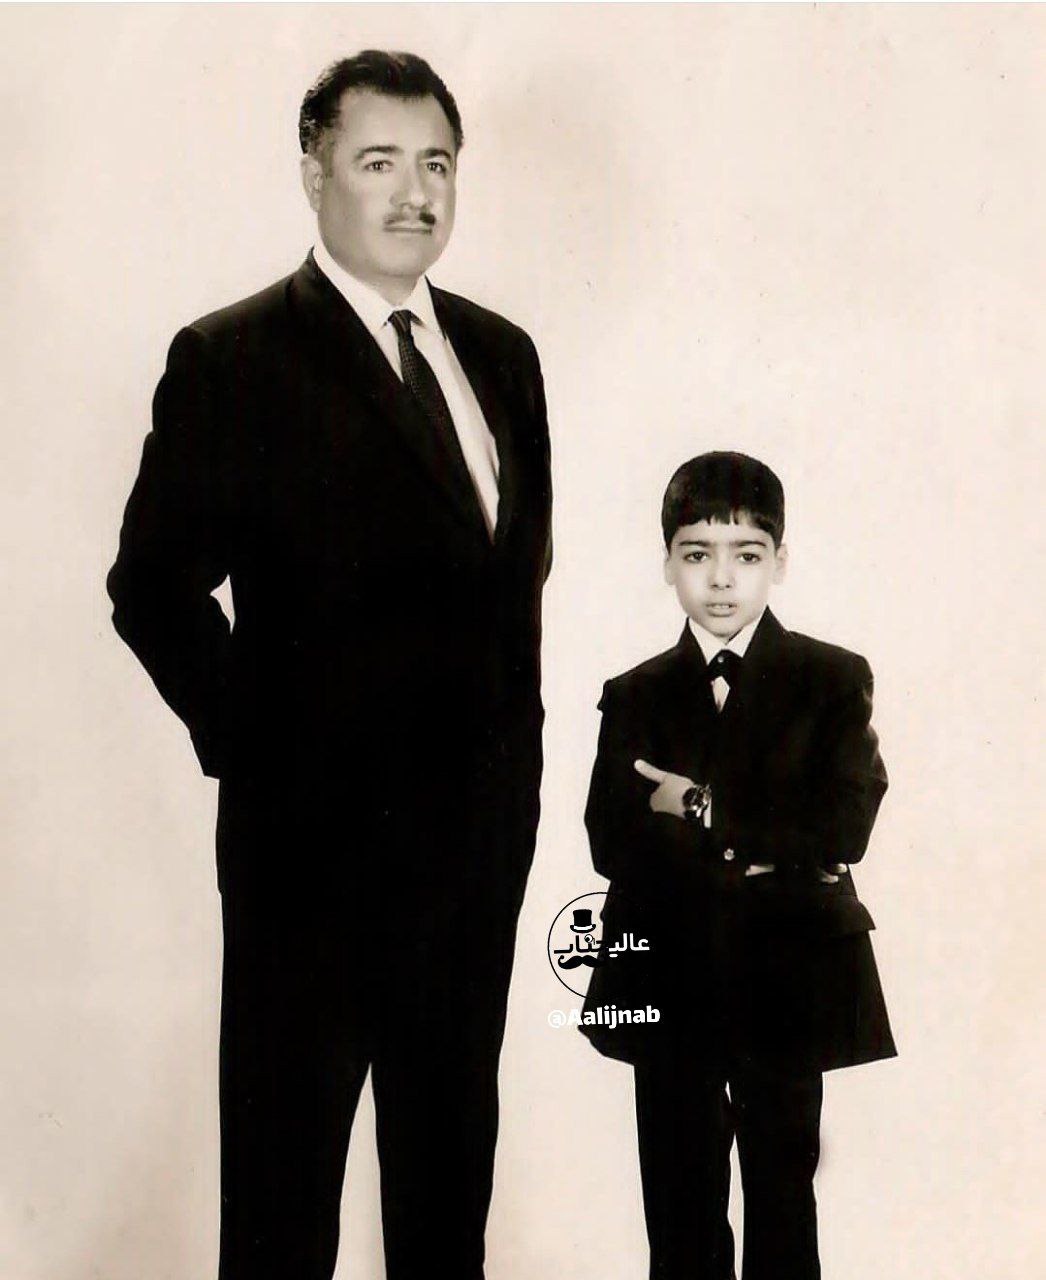 تصویری دیده نشده از کودکی کیهان کلهر همراه پدرش